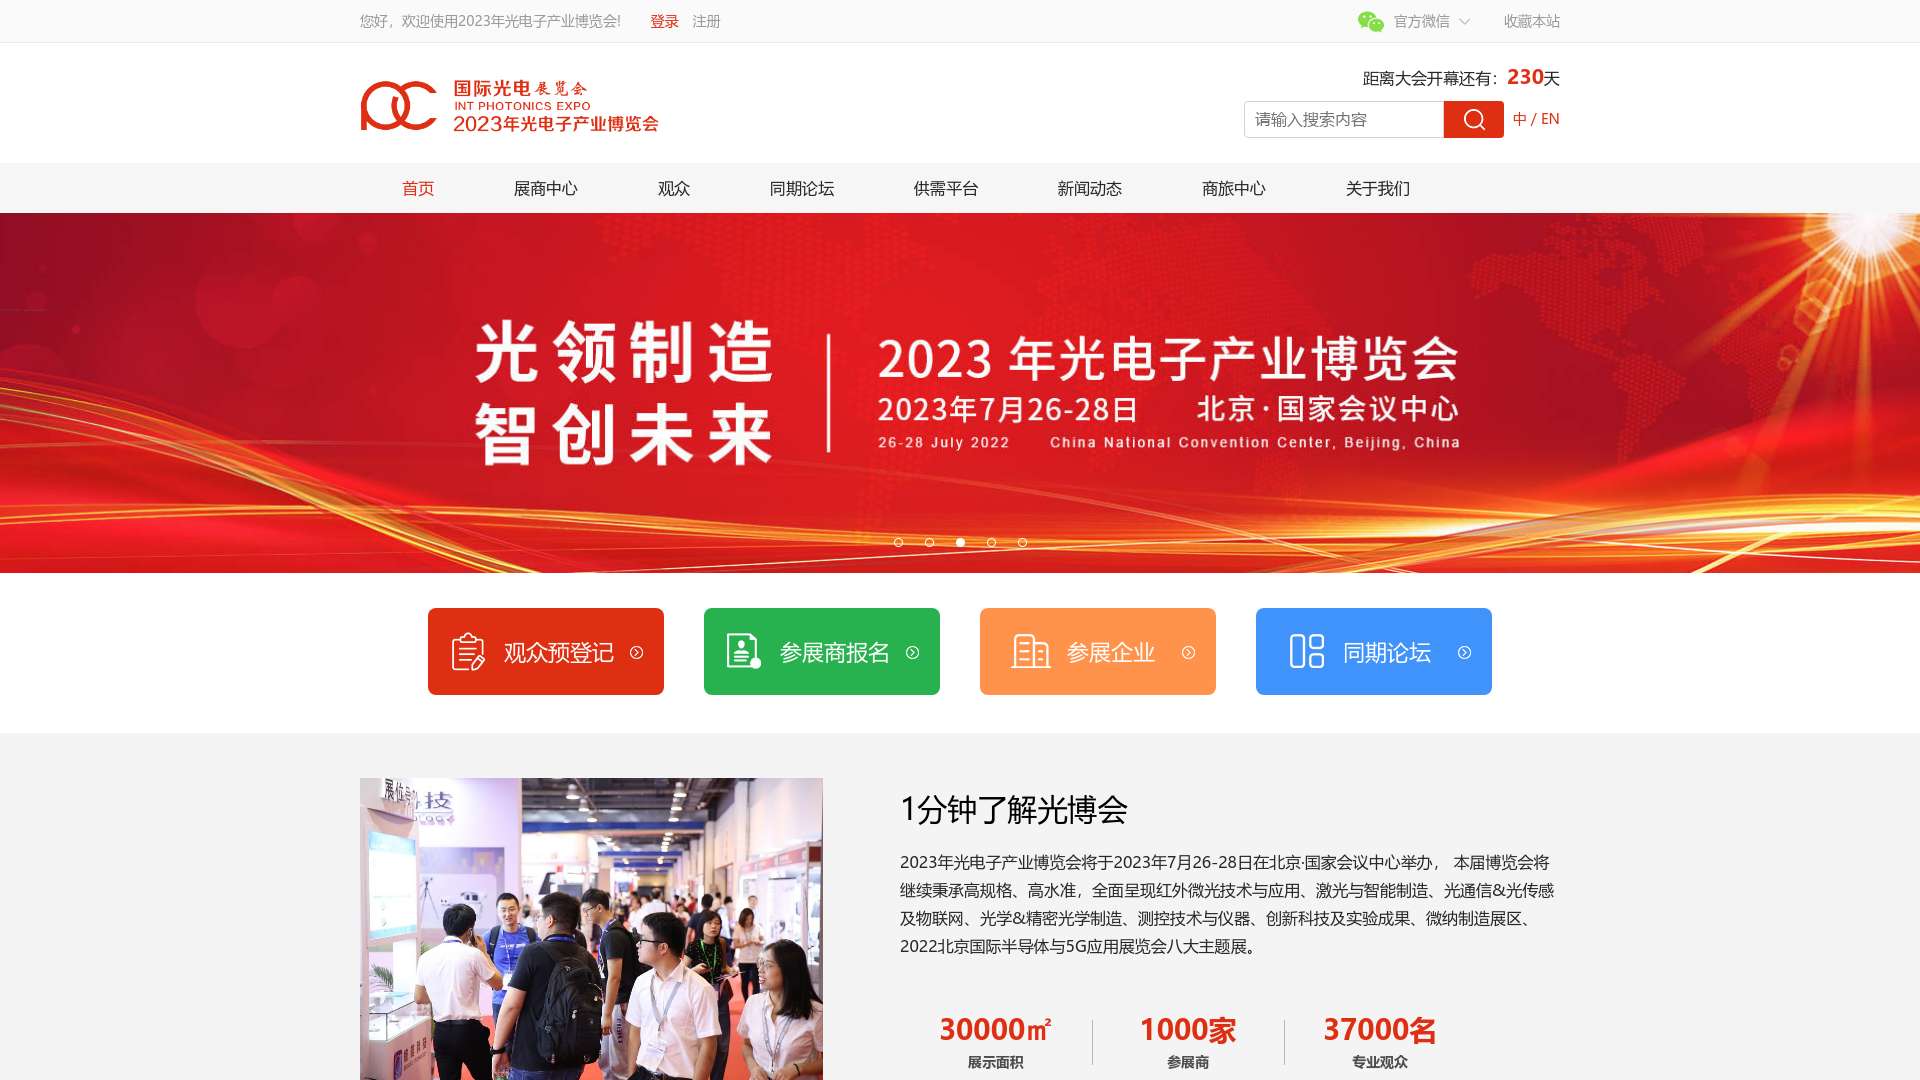 2022年光电子产业博览会|中国光博会|光博会|光电展|北京光博会|北京光电展截图时间：2022-12-08